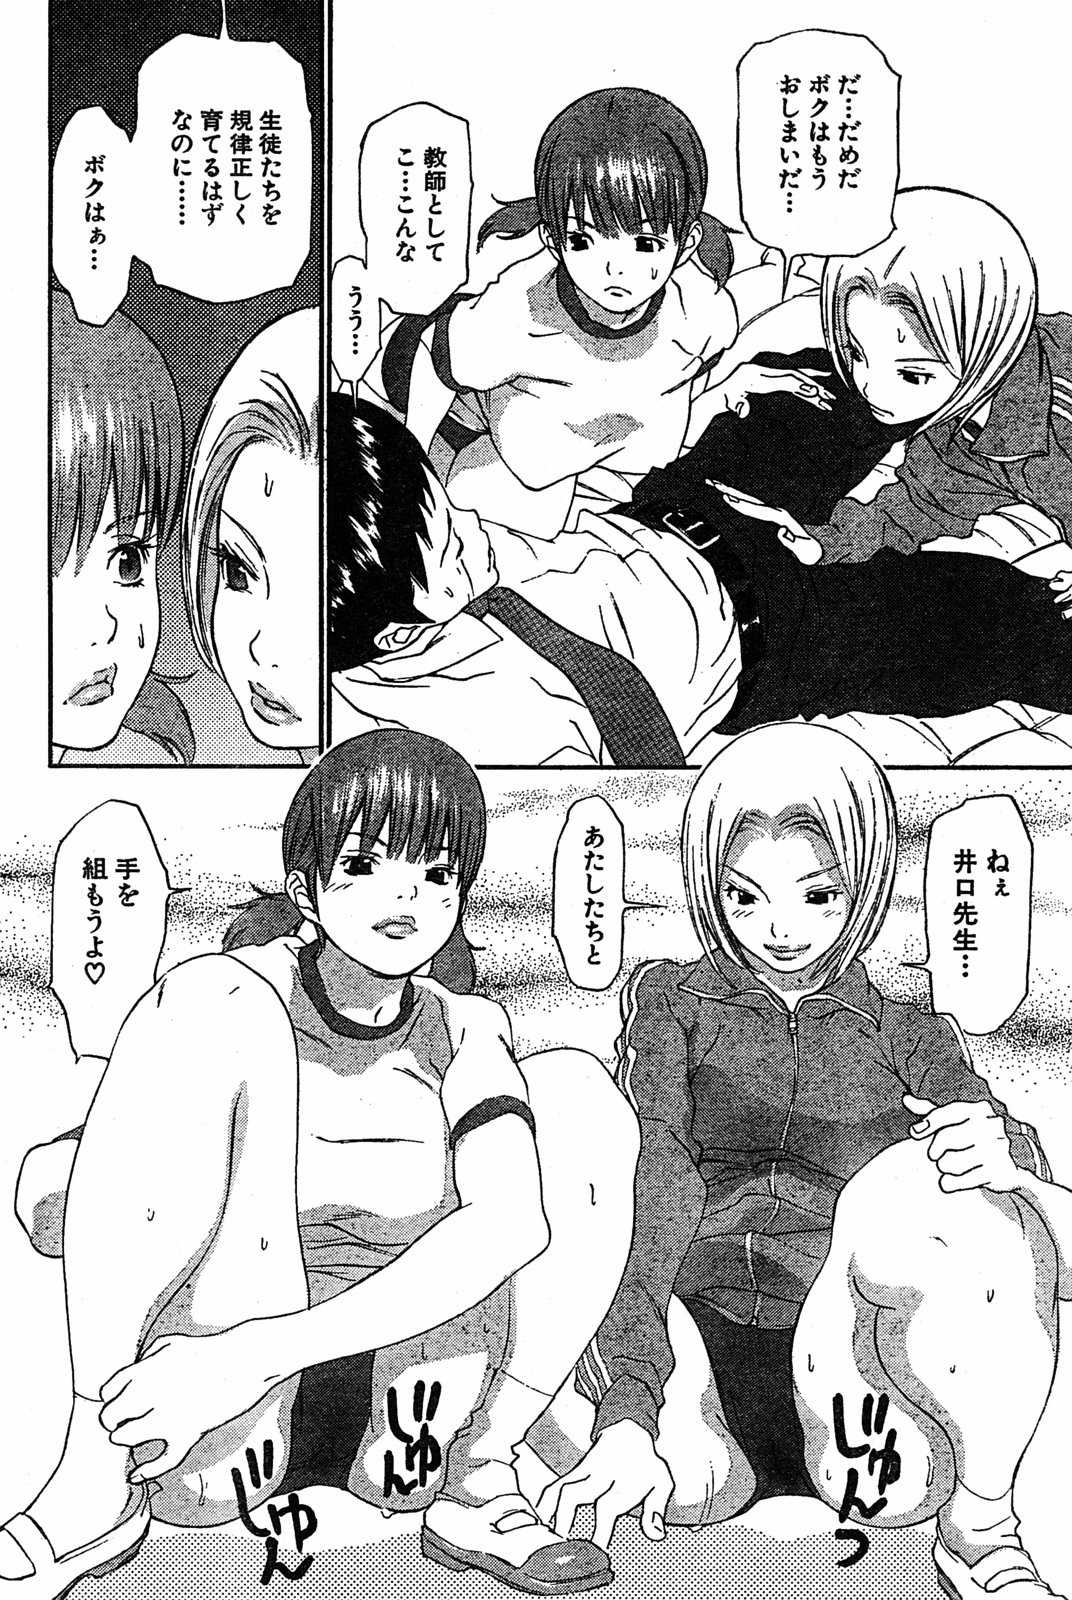 [2005.06.15]Comic Kairakuten Beast Volume 2 